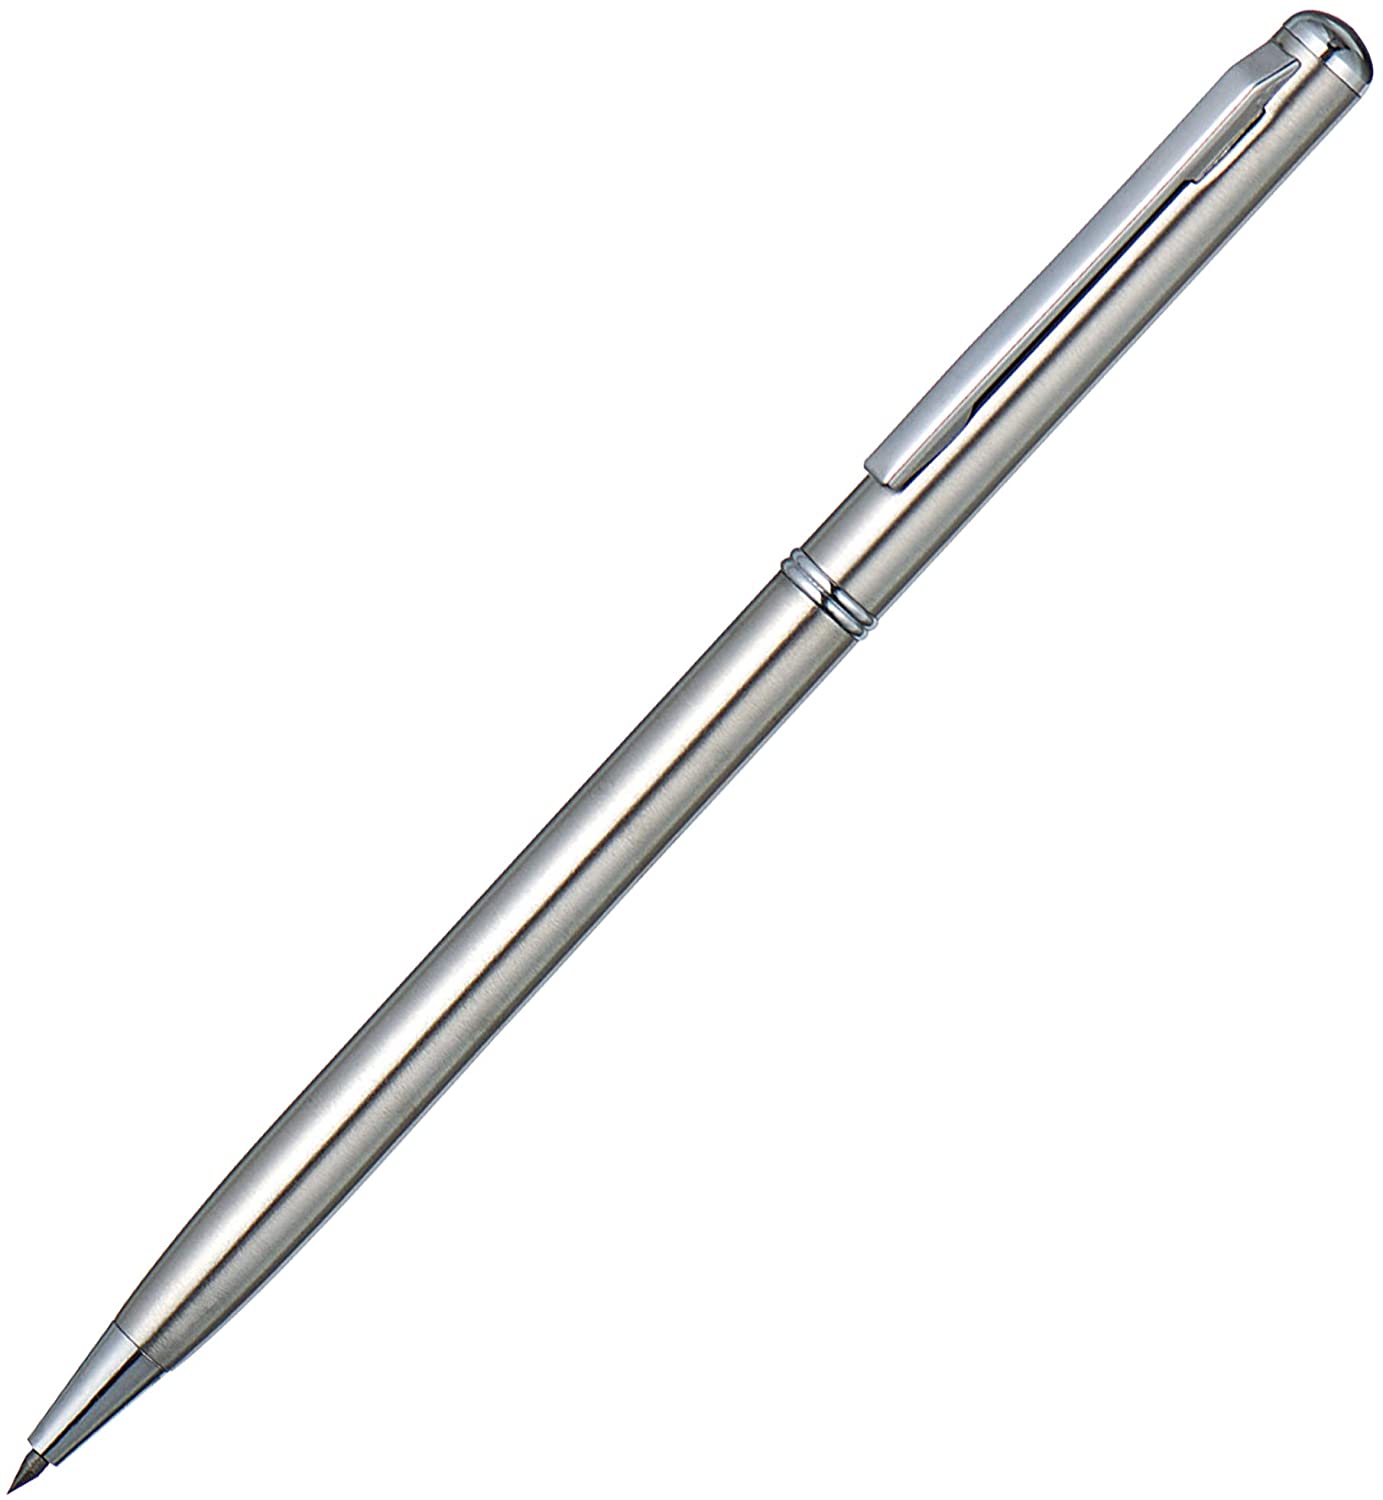 Scribing Needle Pen Type